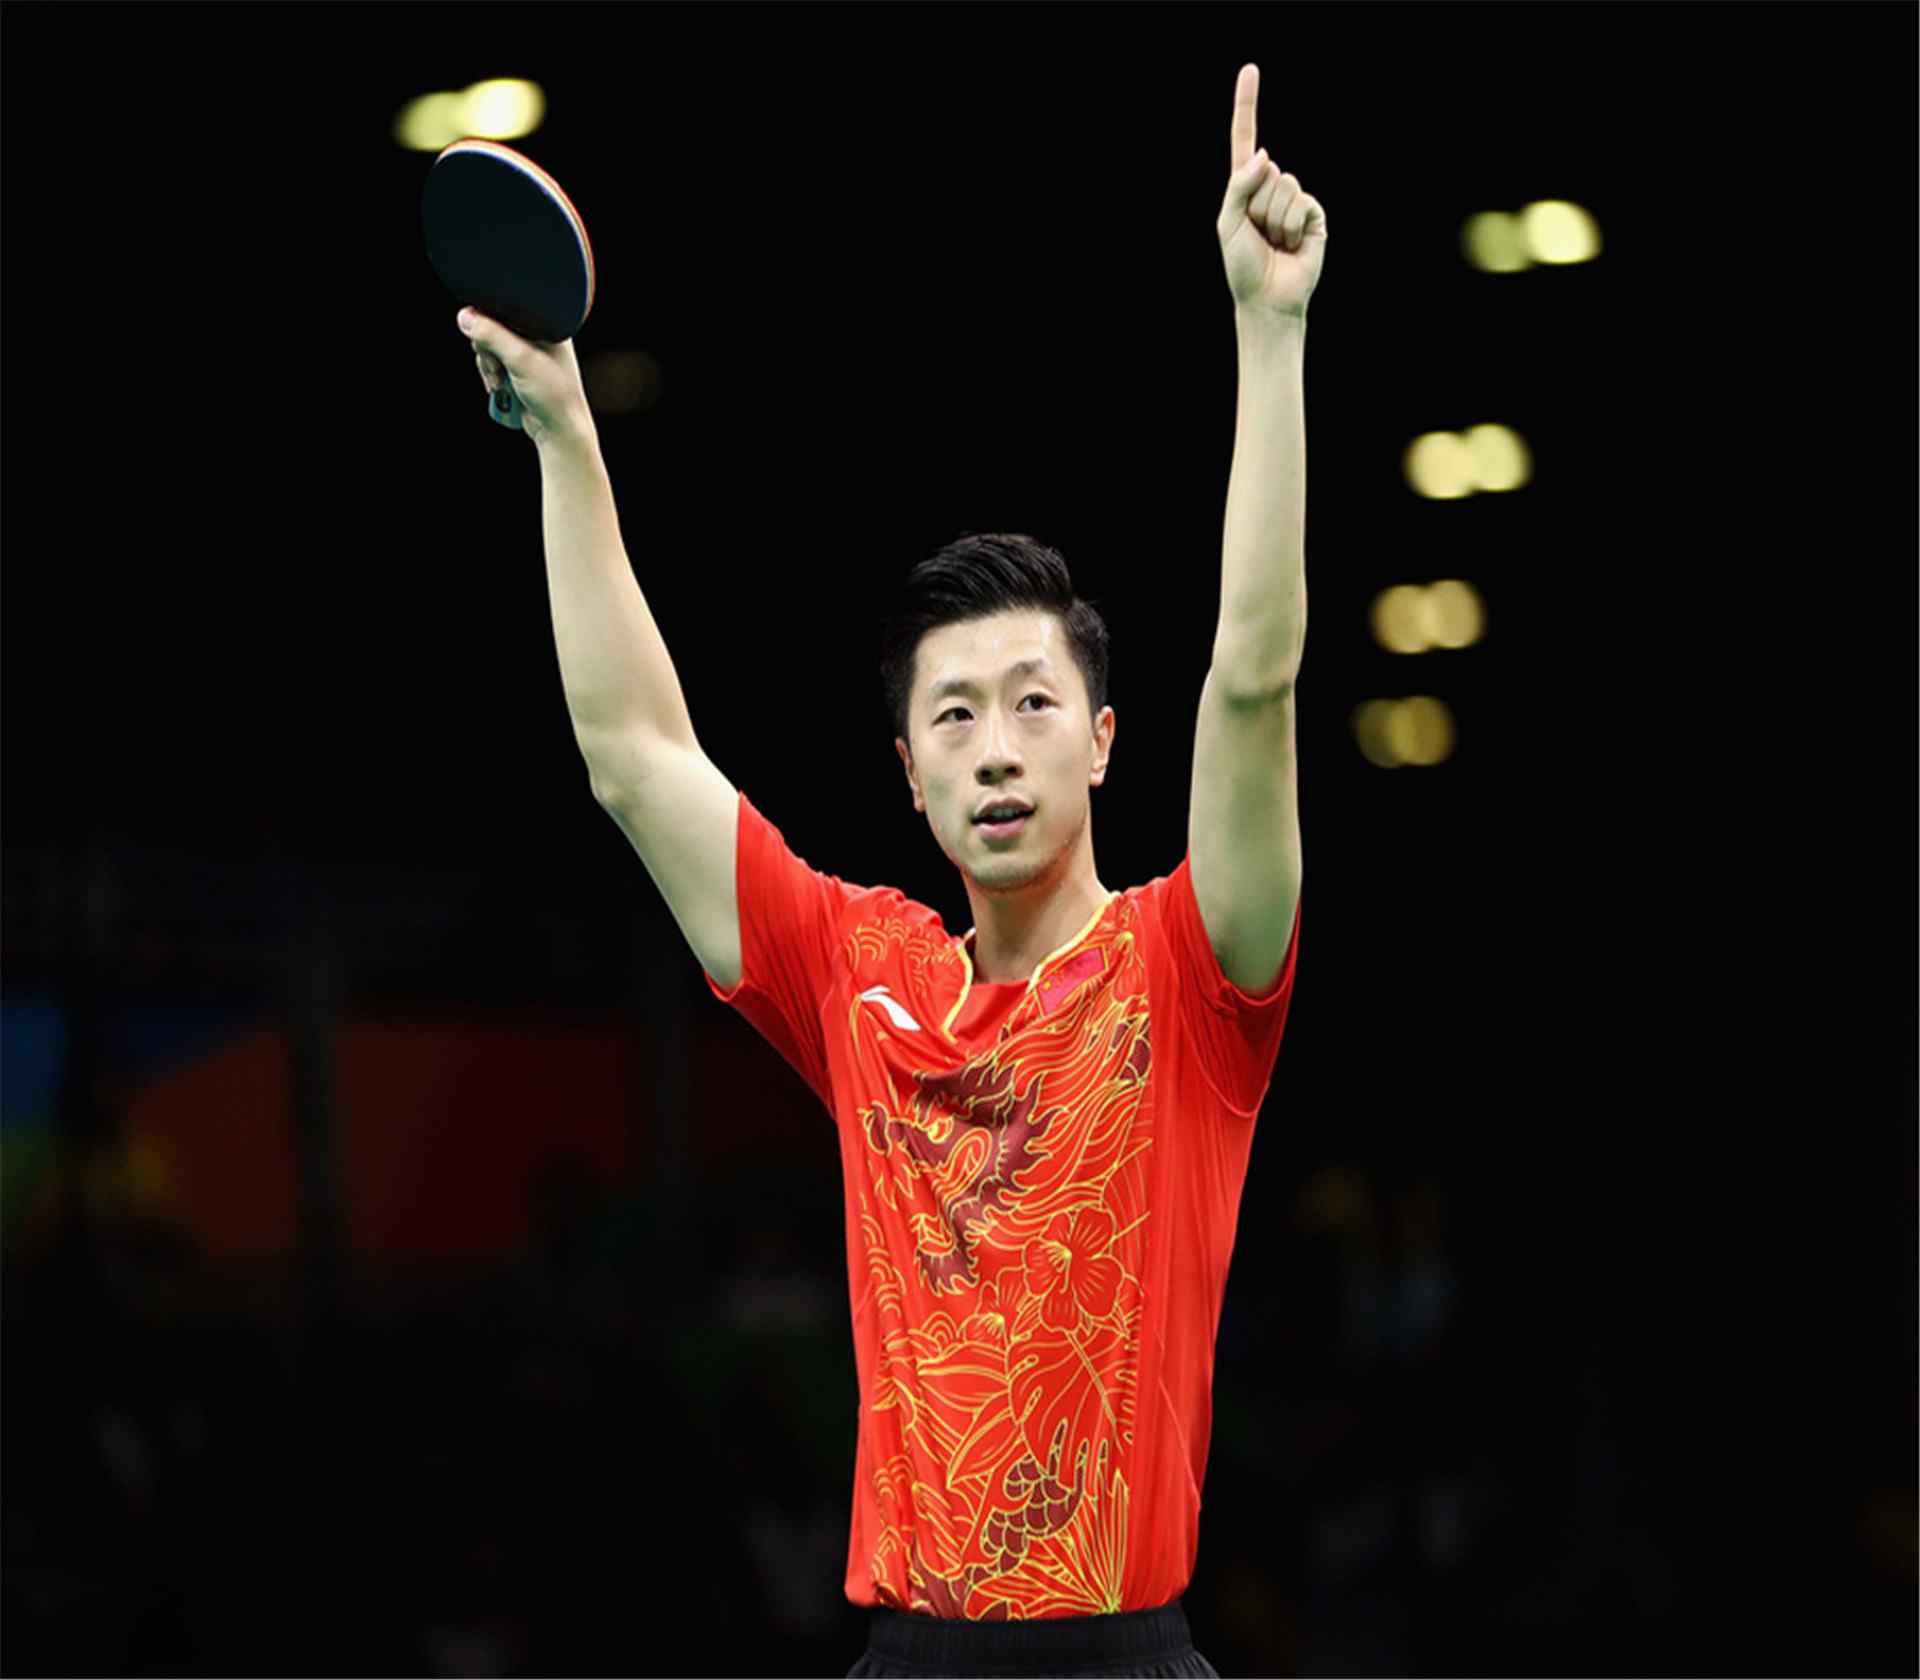 2016里约奥运男乒乓球马龙胜利图片桌面壁纸